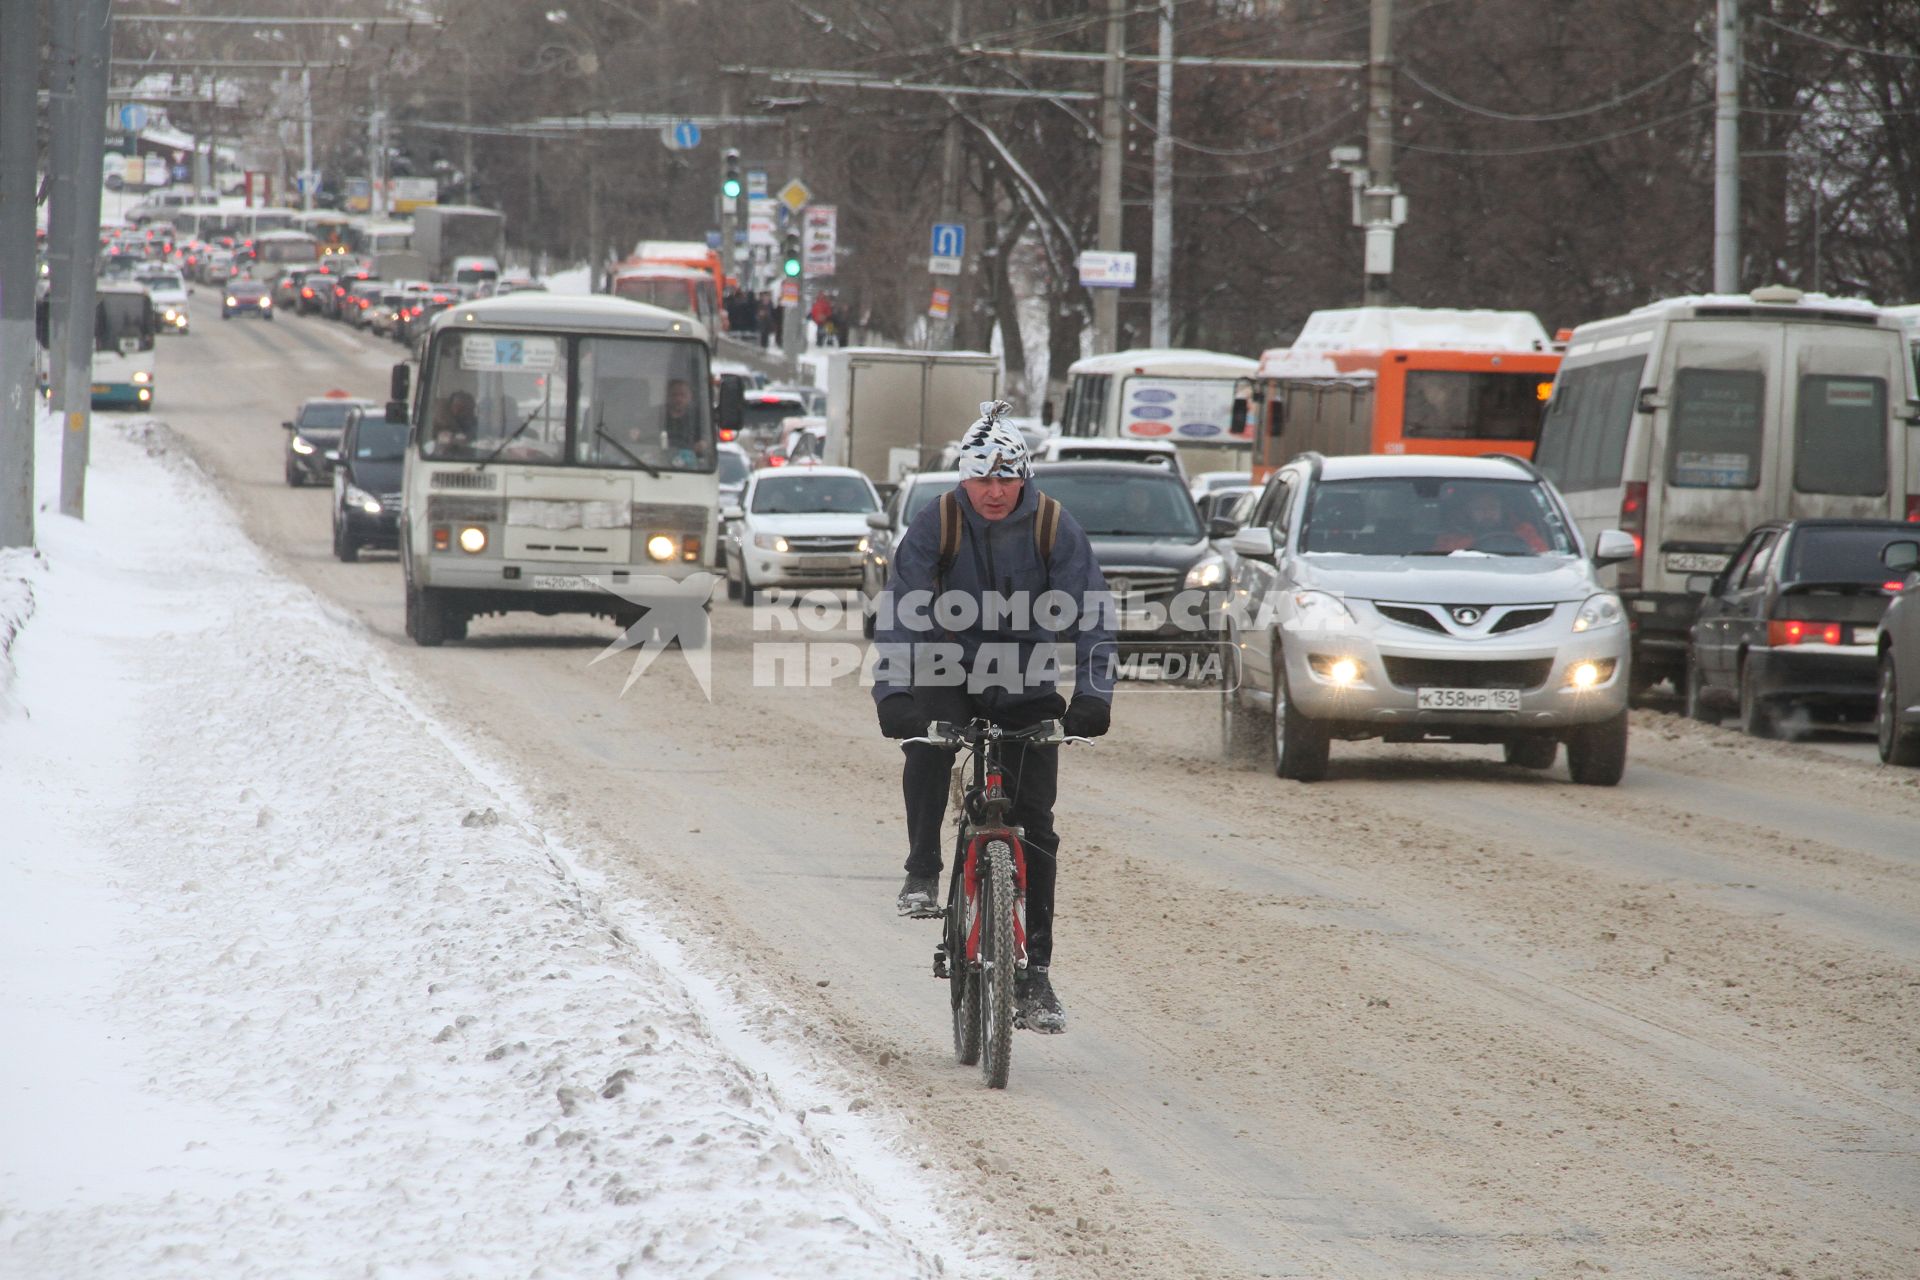 Нижний Новгород. Велосипедист едет по автомобильной дороге на одной из улиц города.